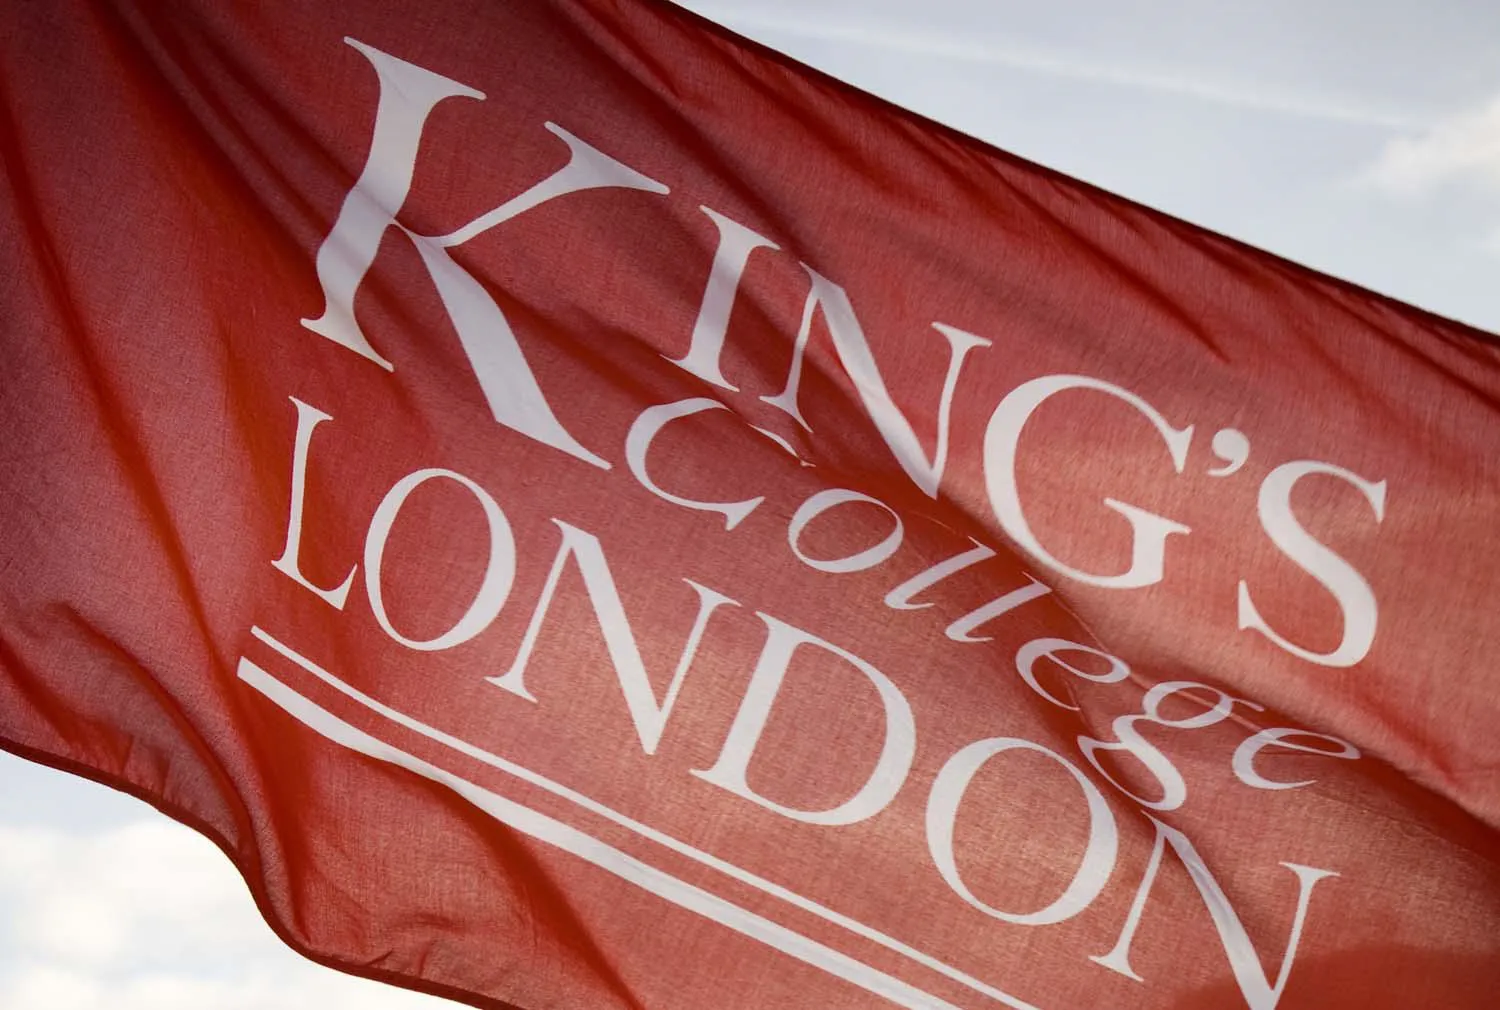 King's flag London